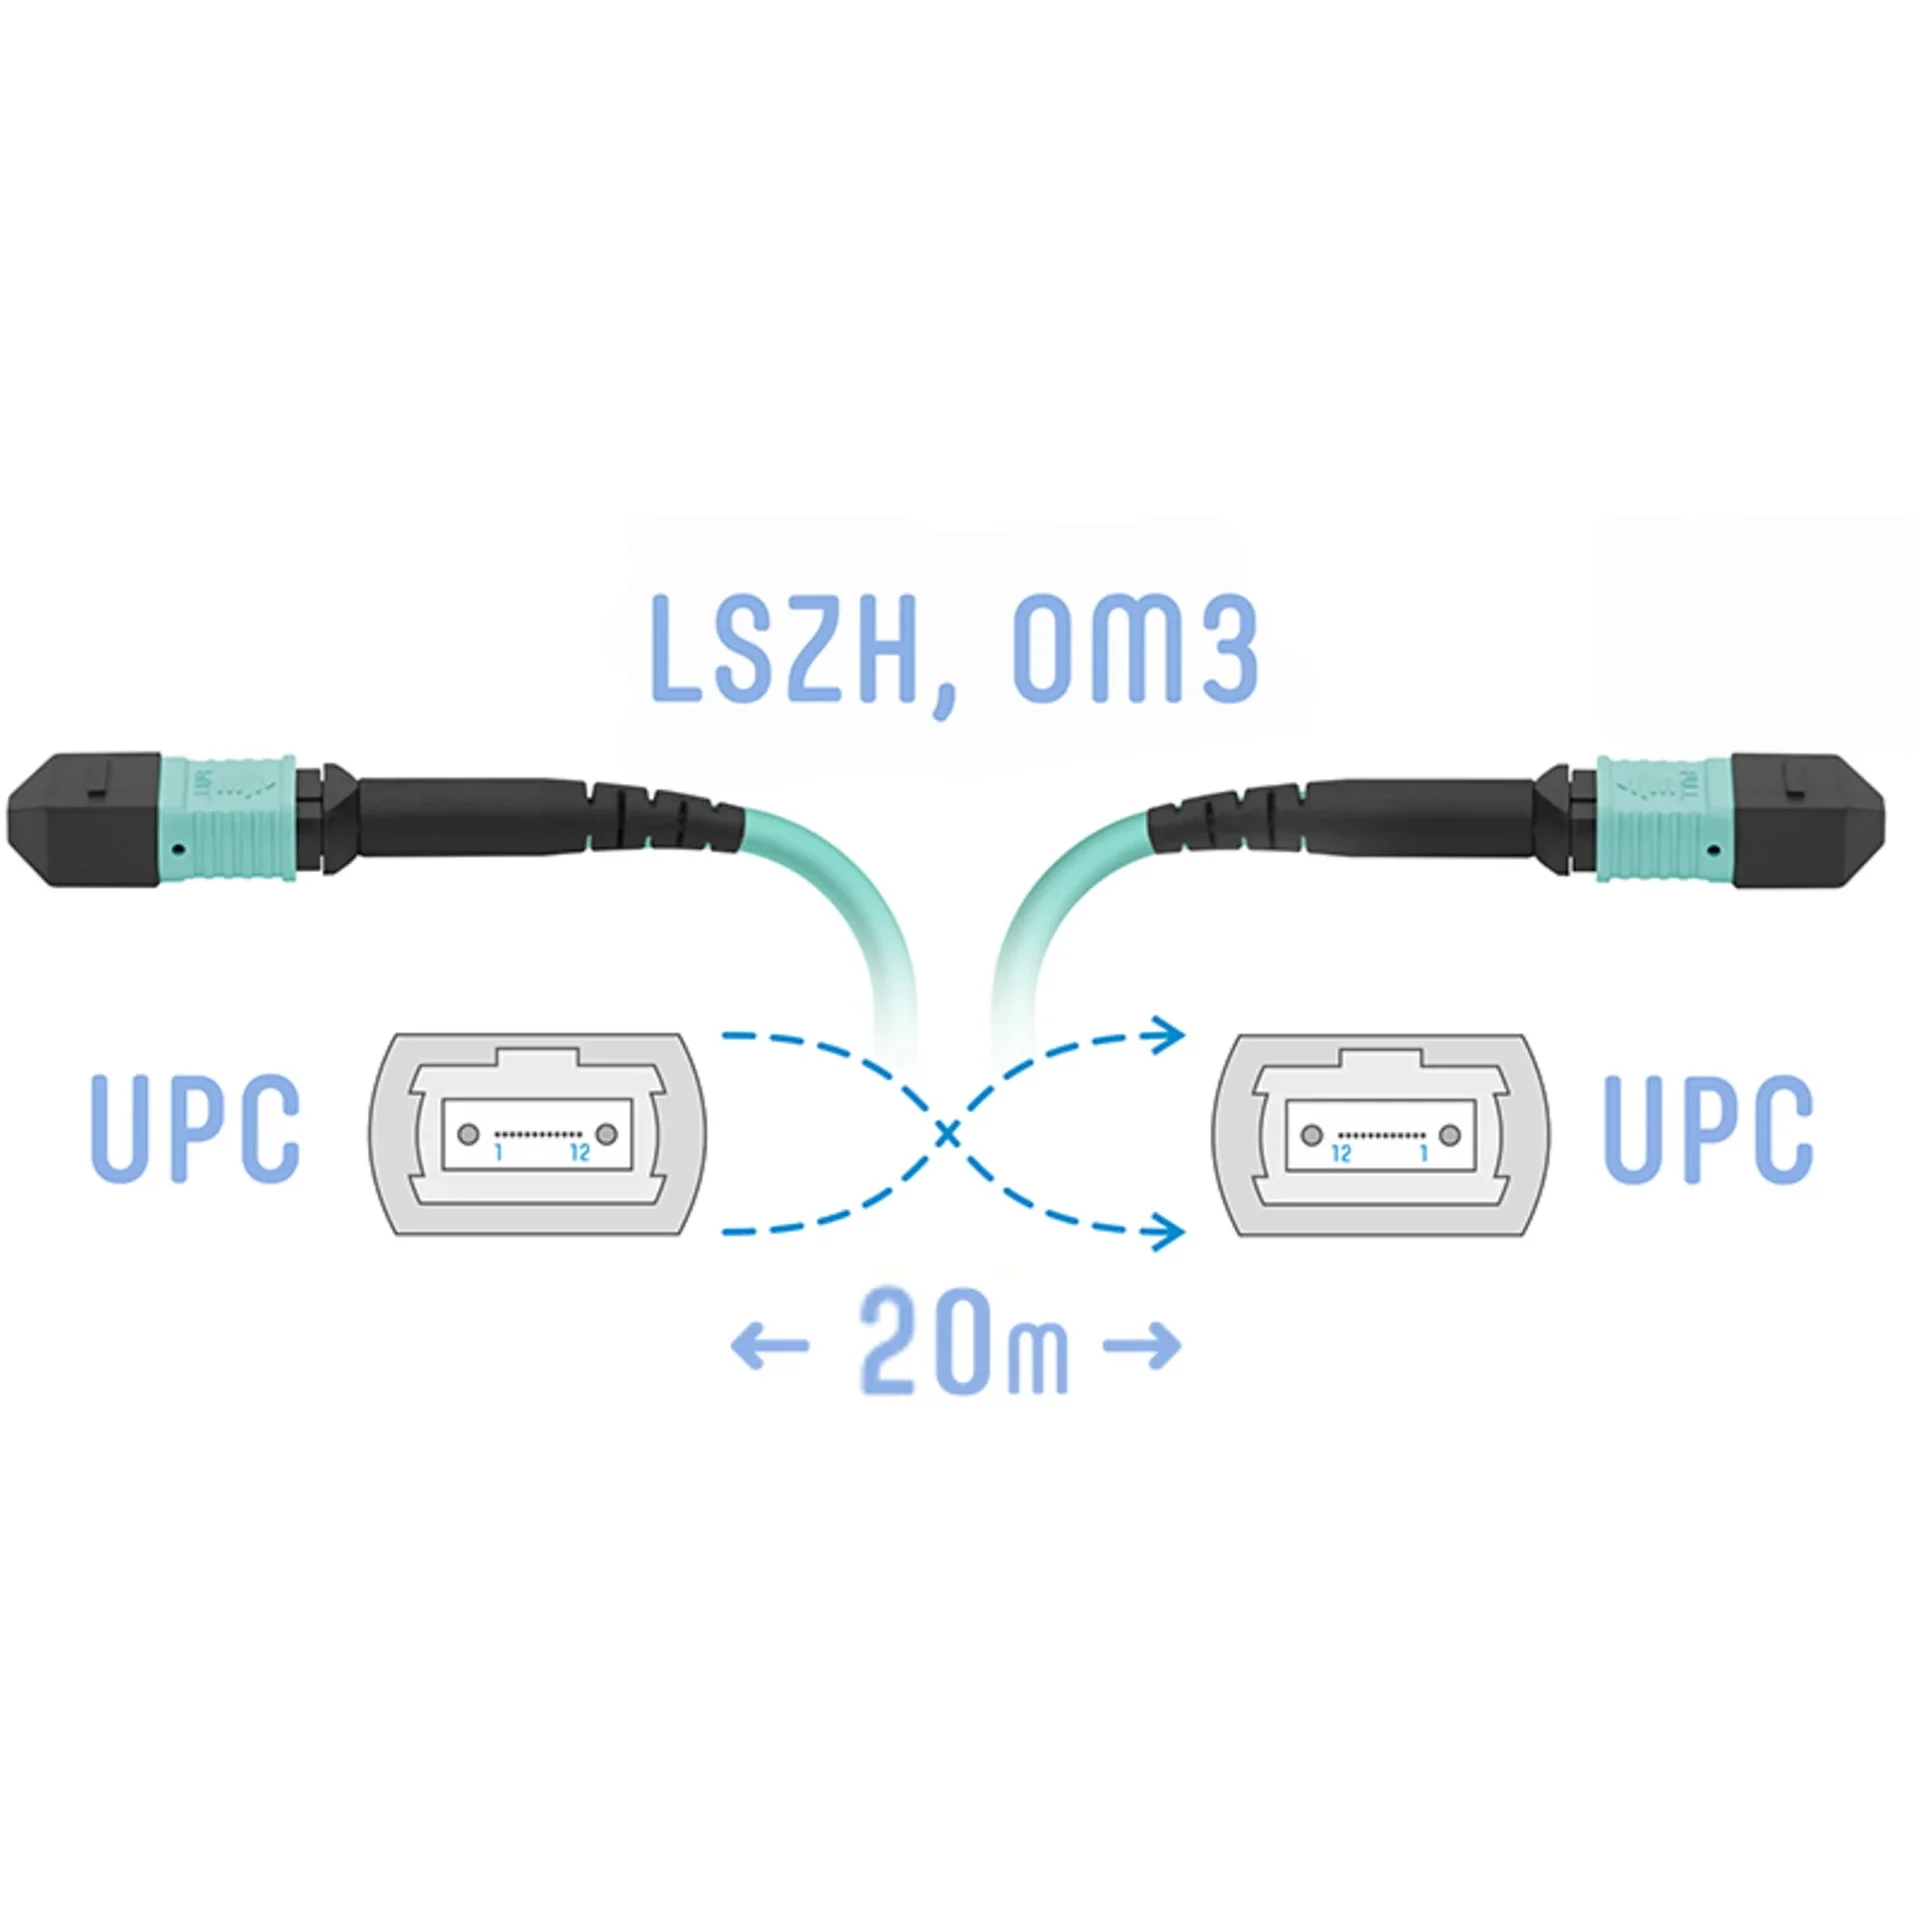 SNR-PC-MPO/UPC-MPO/UPC-FF-MM-12F-20m - Оптический патчкорд MPO/UPC - MPO/UPС, FF (Female / Female), кроссовый, MM, 12 волокон диаметром 50/125 (OM3), 20 метров купить в Казани 	Оптический разъем MPO (Multi-fiber push-on) является разумной альтернативой для кабельной инфрастру